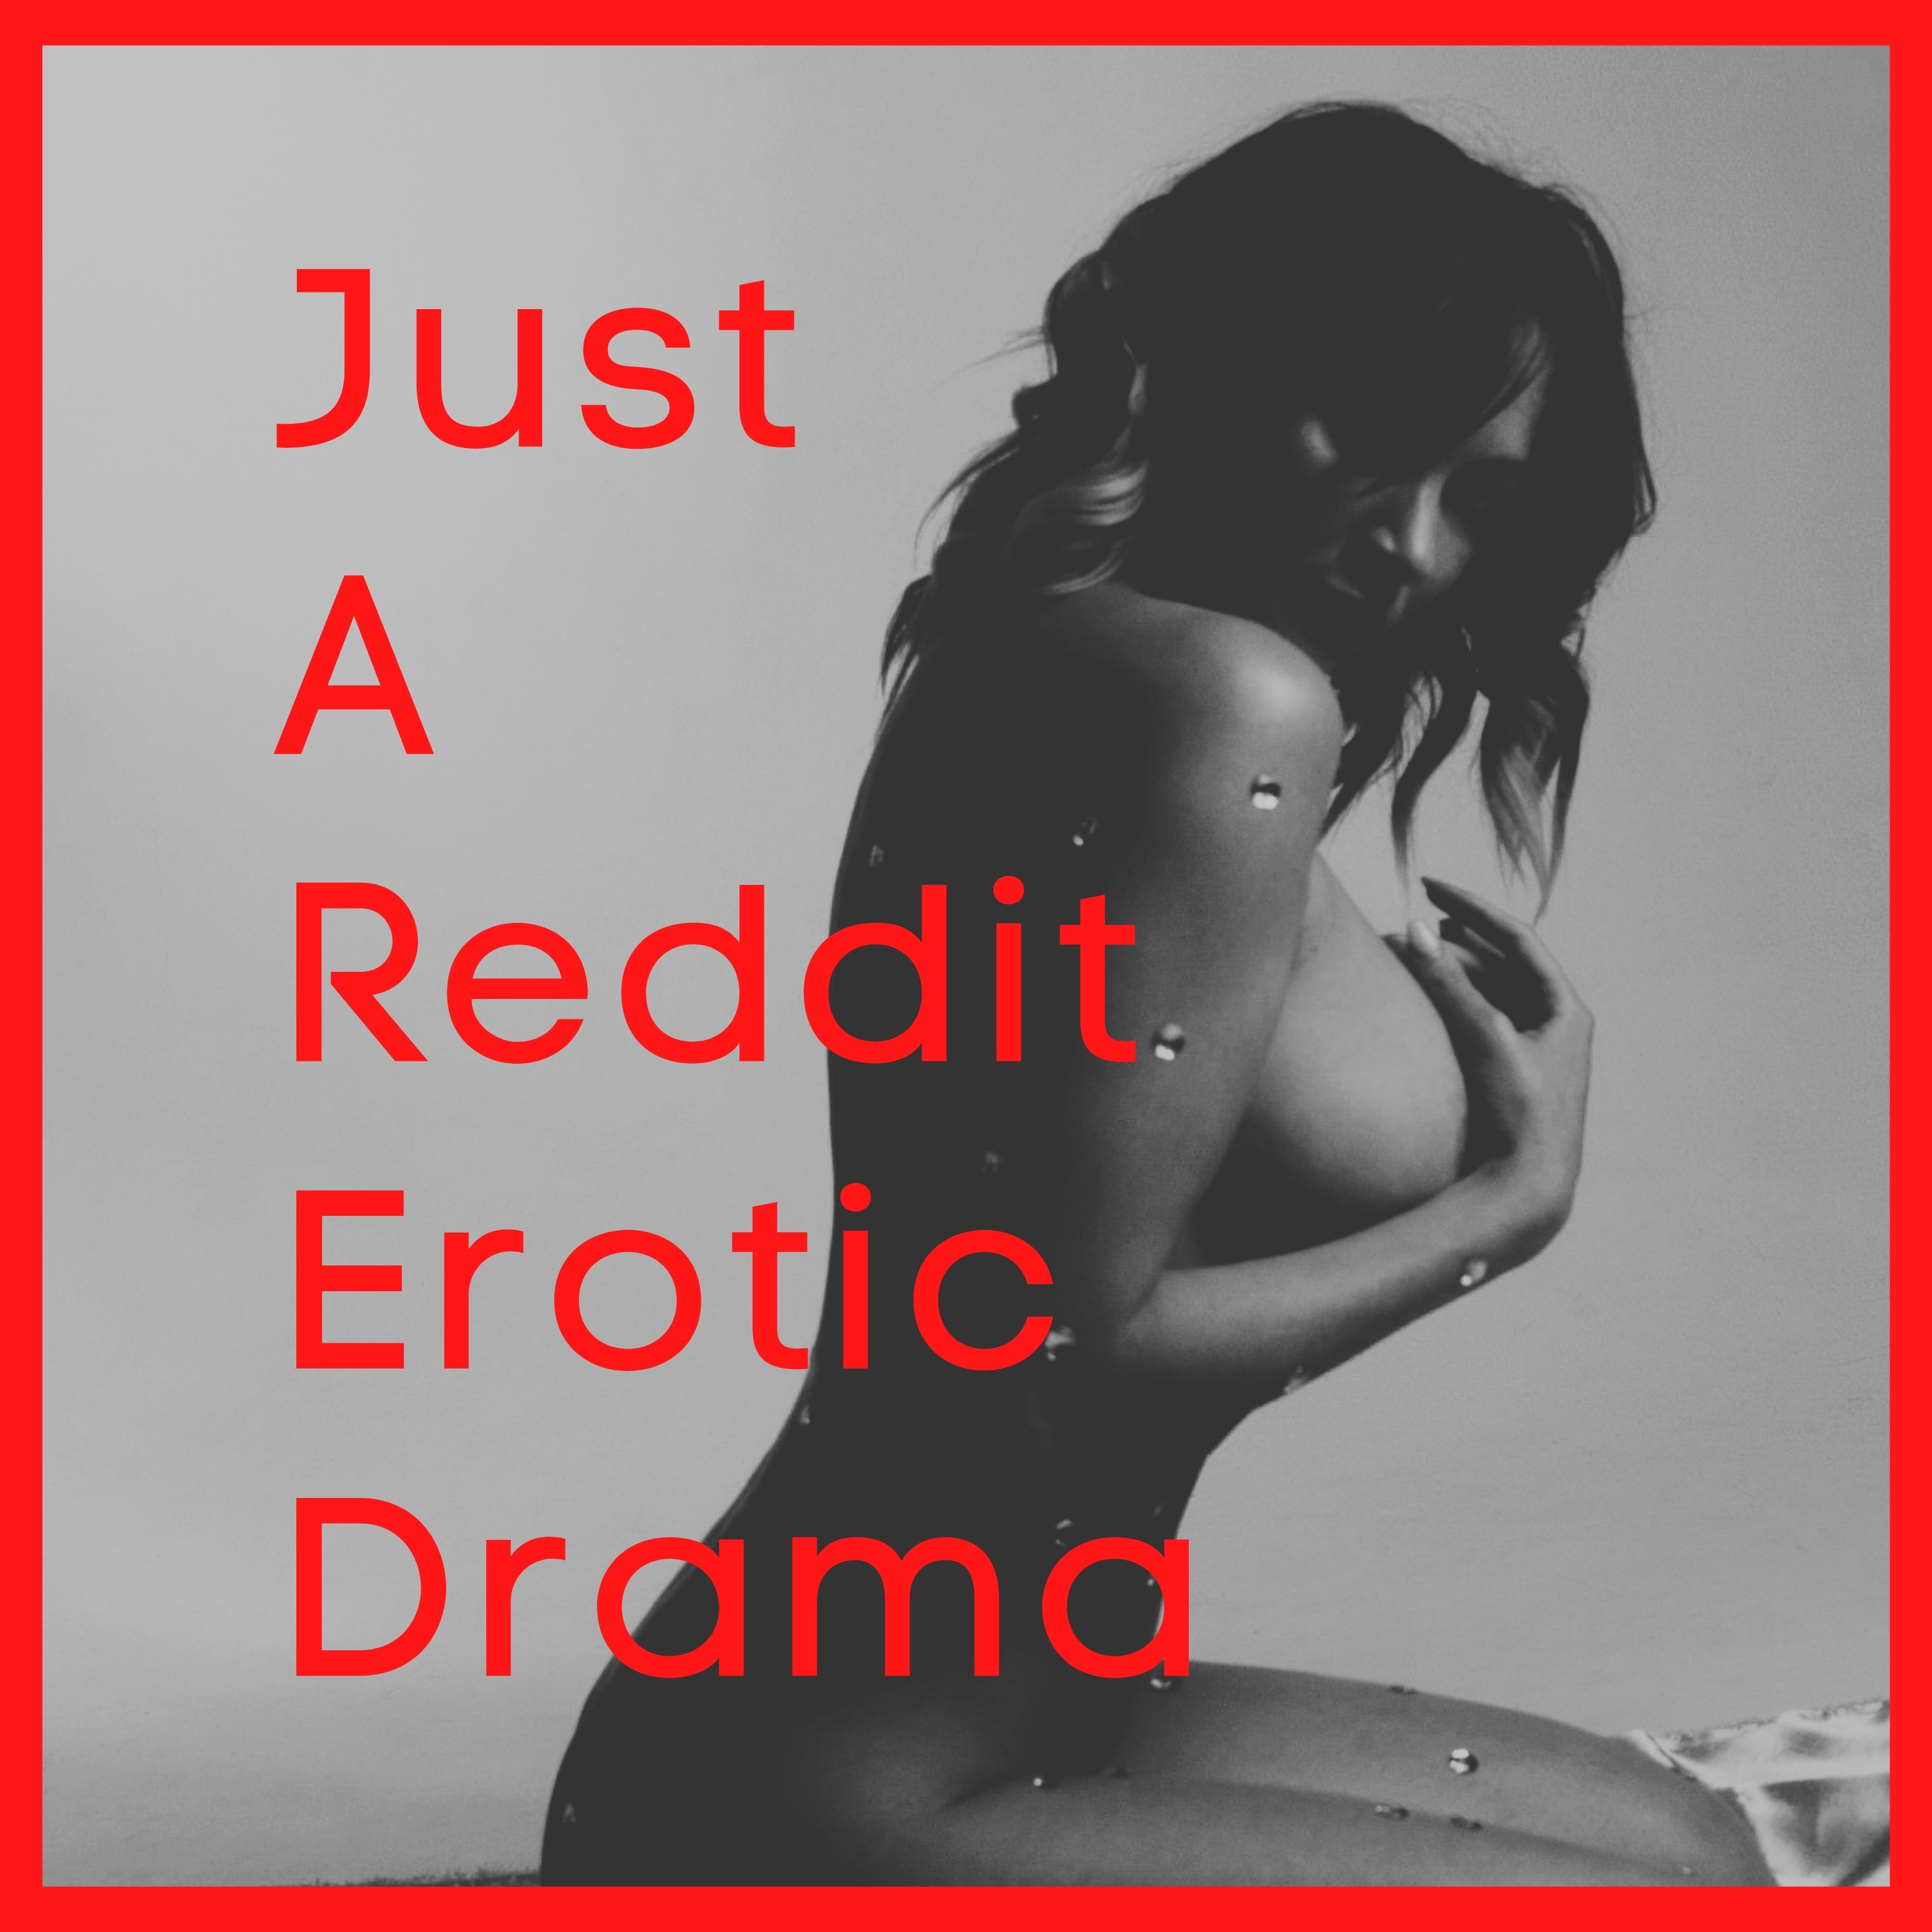 Just A Reddit Erotic Drama RedCircle